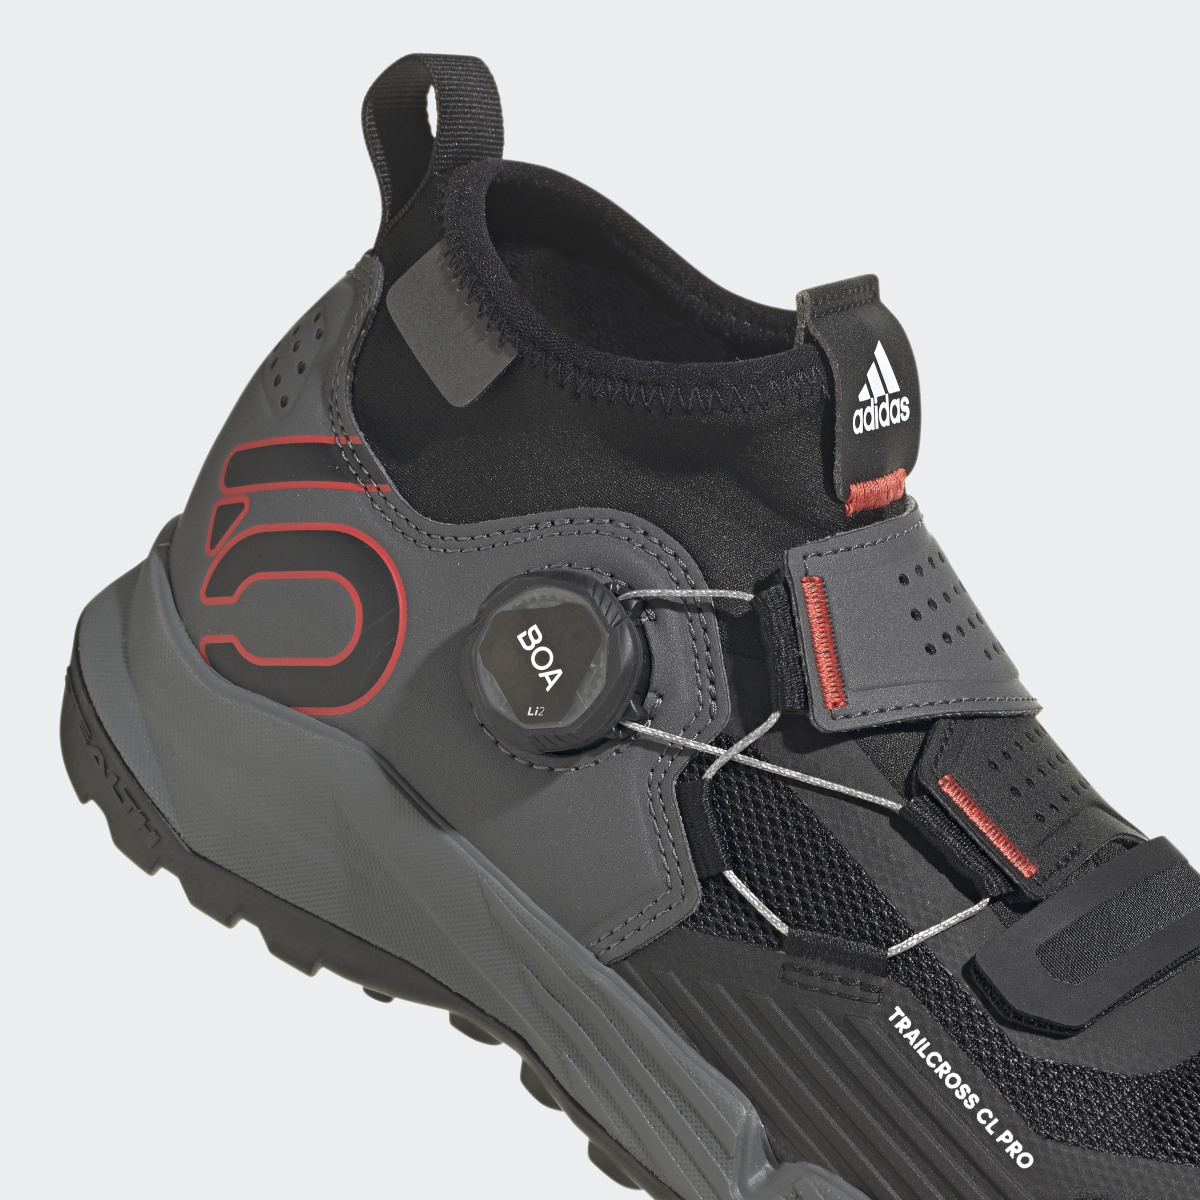 Adidas Five Ten Trailcross Pro Clip-In Mountain Biking Shoes. 9